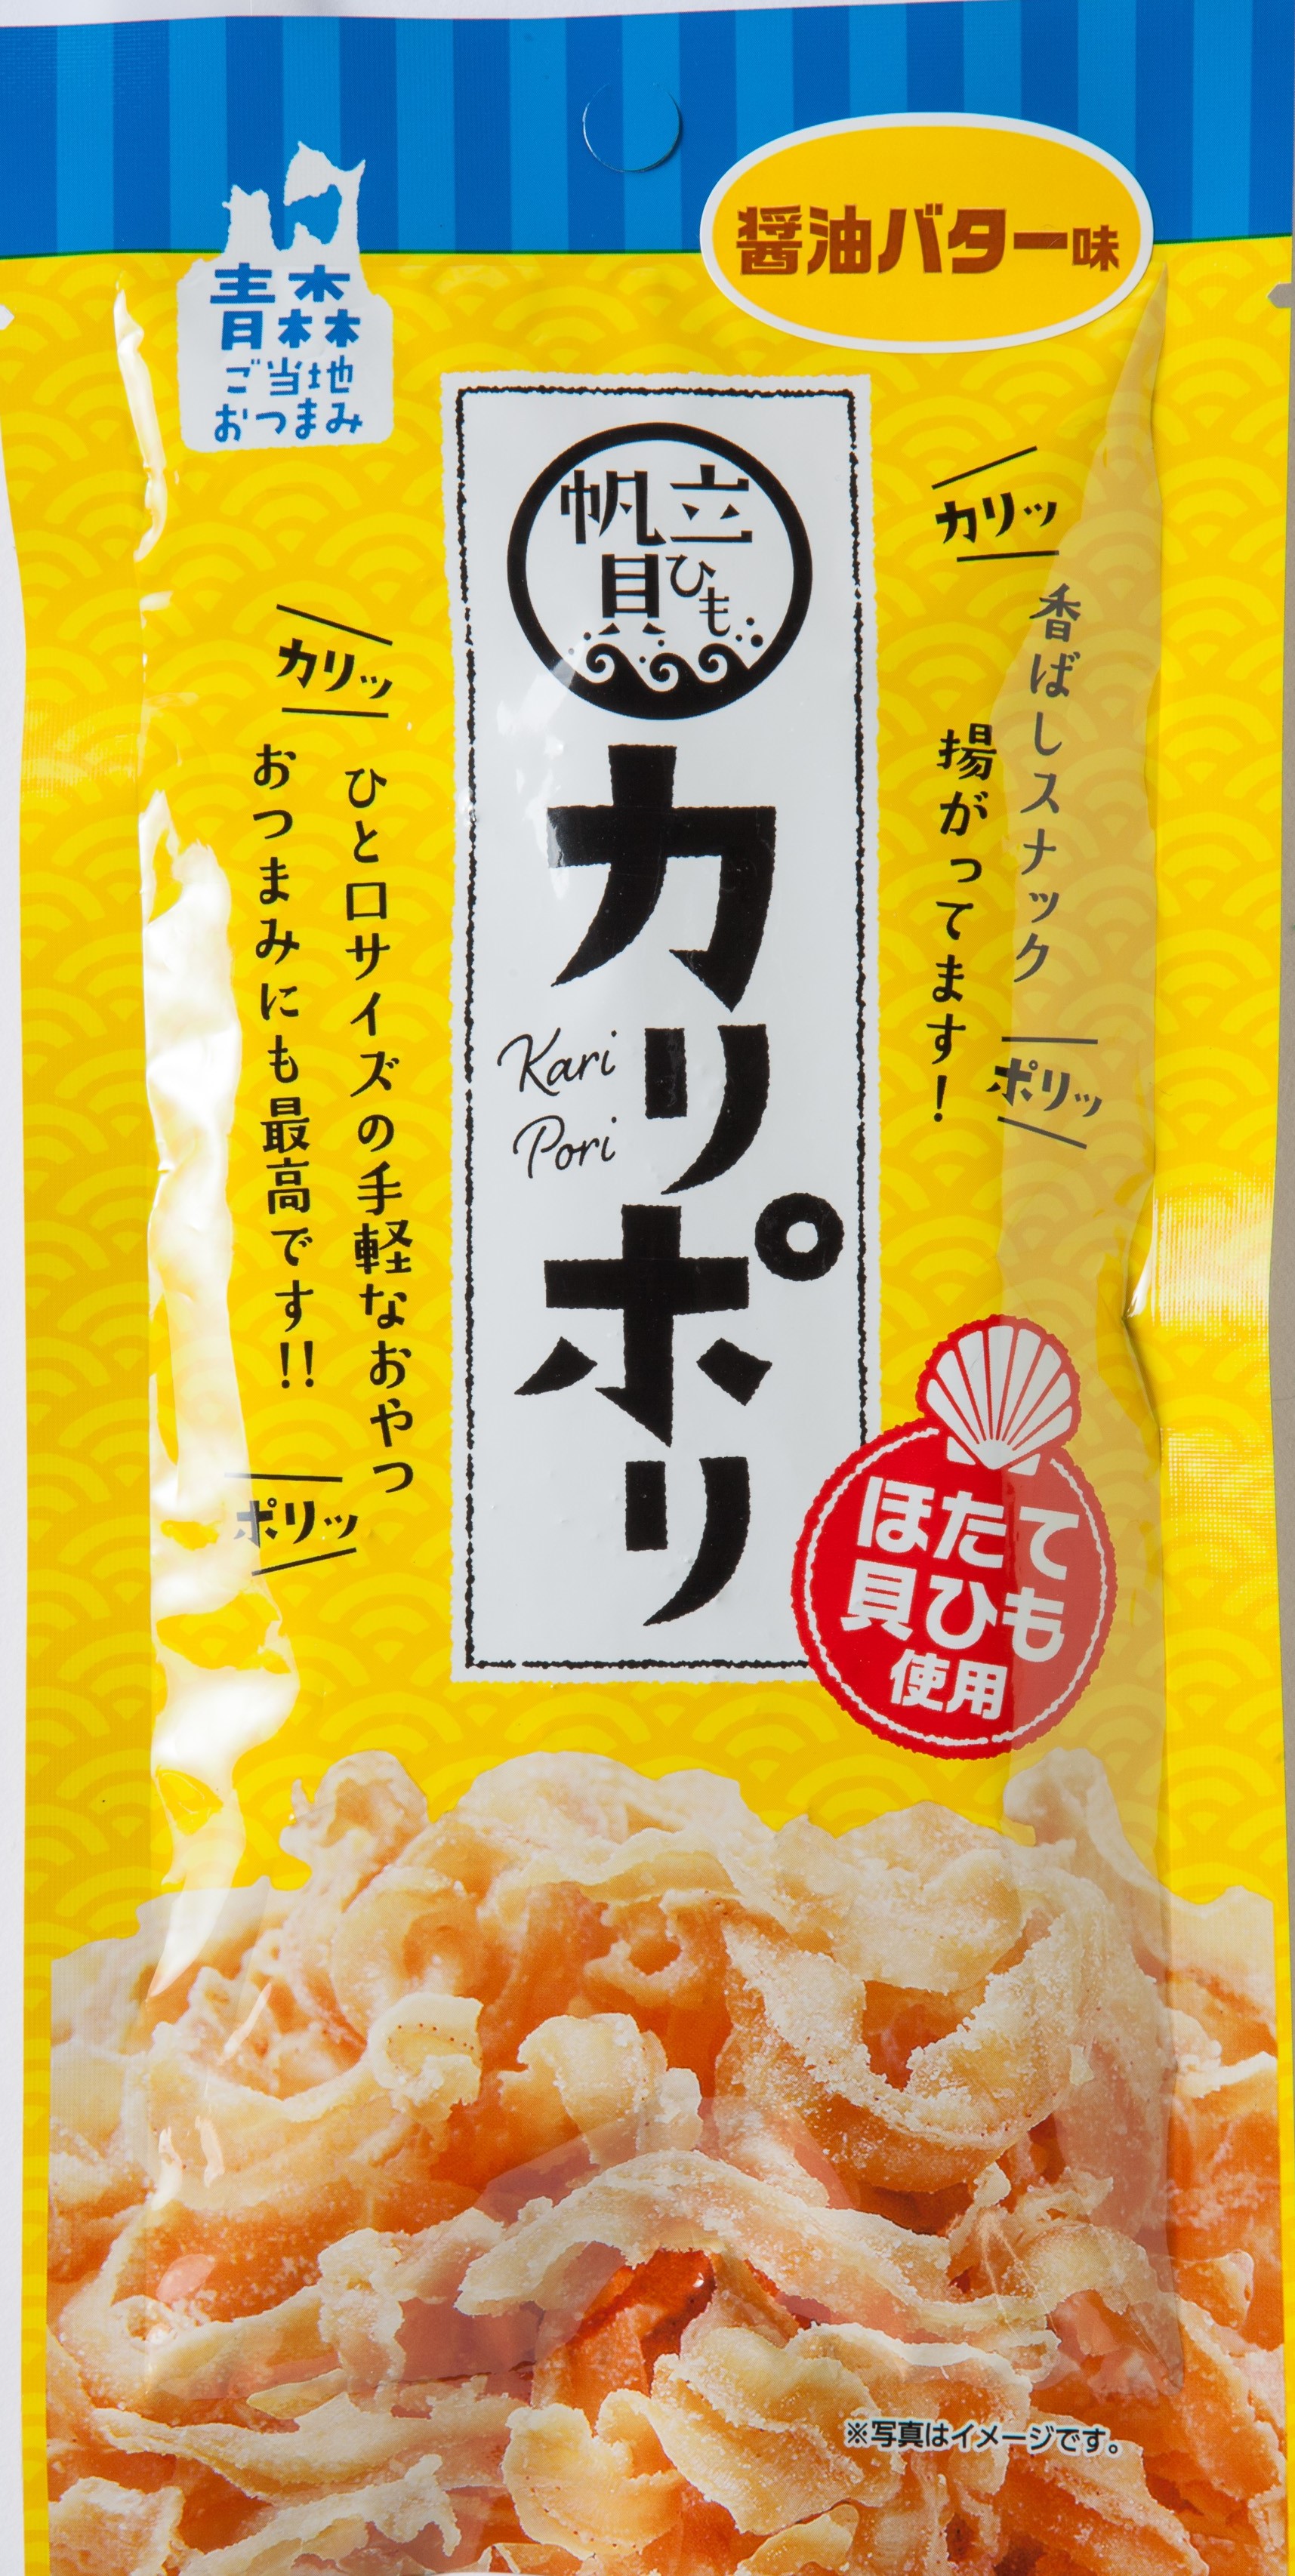 カリポリ貝ひも18ｇ 4袋セット 十和田農産物販売合同会社